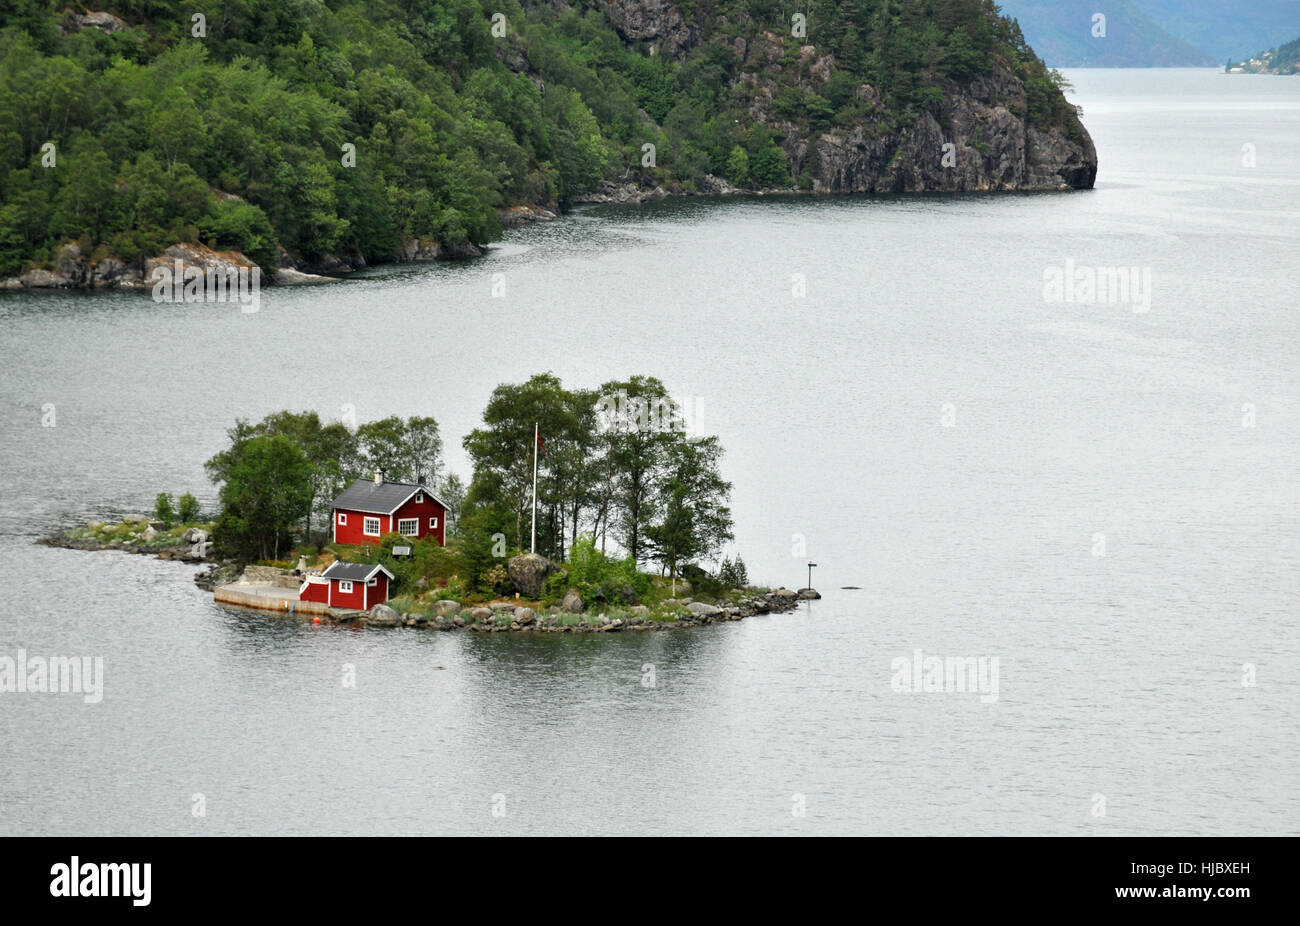 Haus Gebaude Norwegen Fjord Ferienhaus Freistehend Haus Hutte Insel Stockfotografie Alamy